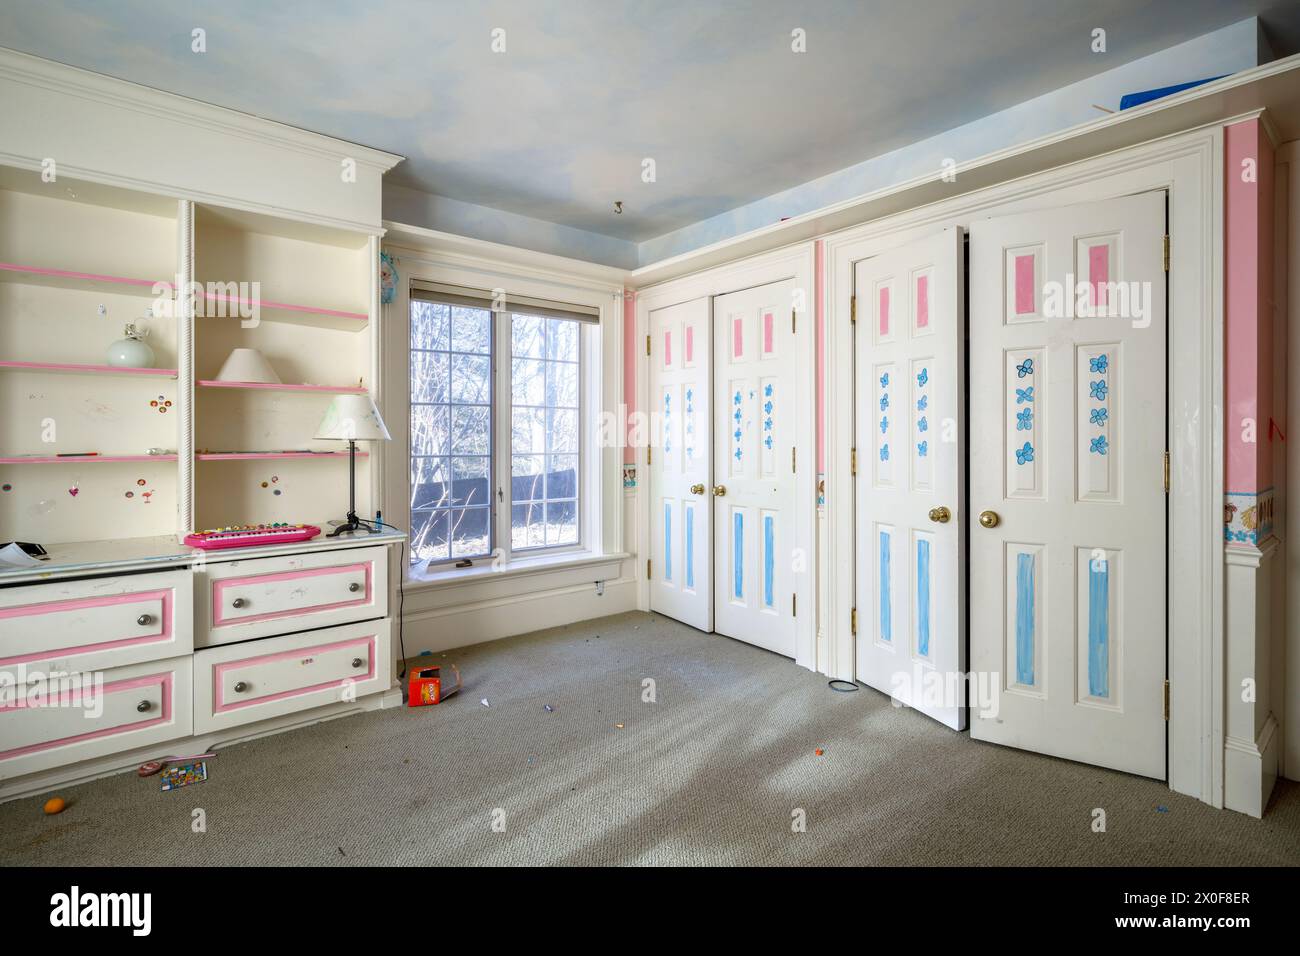 Une chambre d'enfant avec un plafond peint comme le ciel à l'intérieur d'une maison abandonnée. Banque D'Images